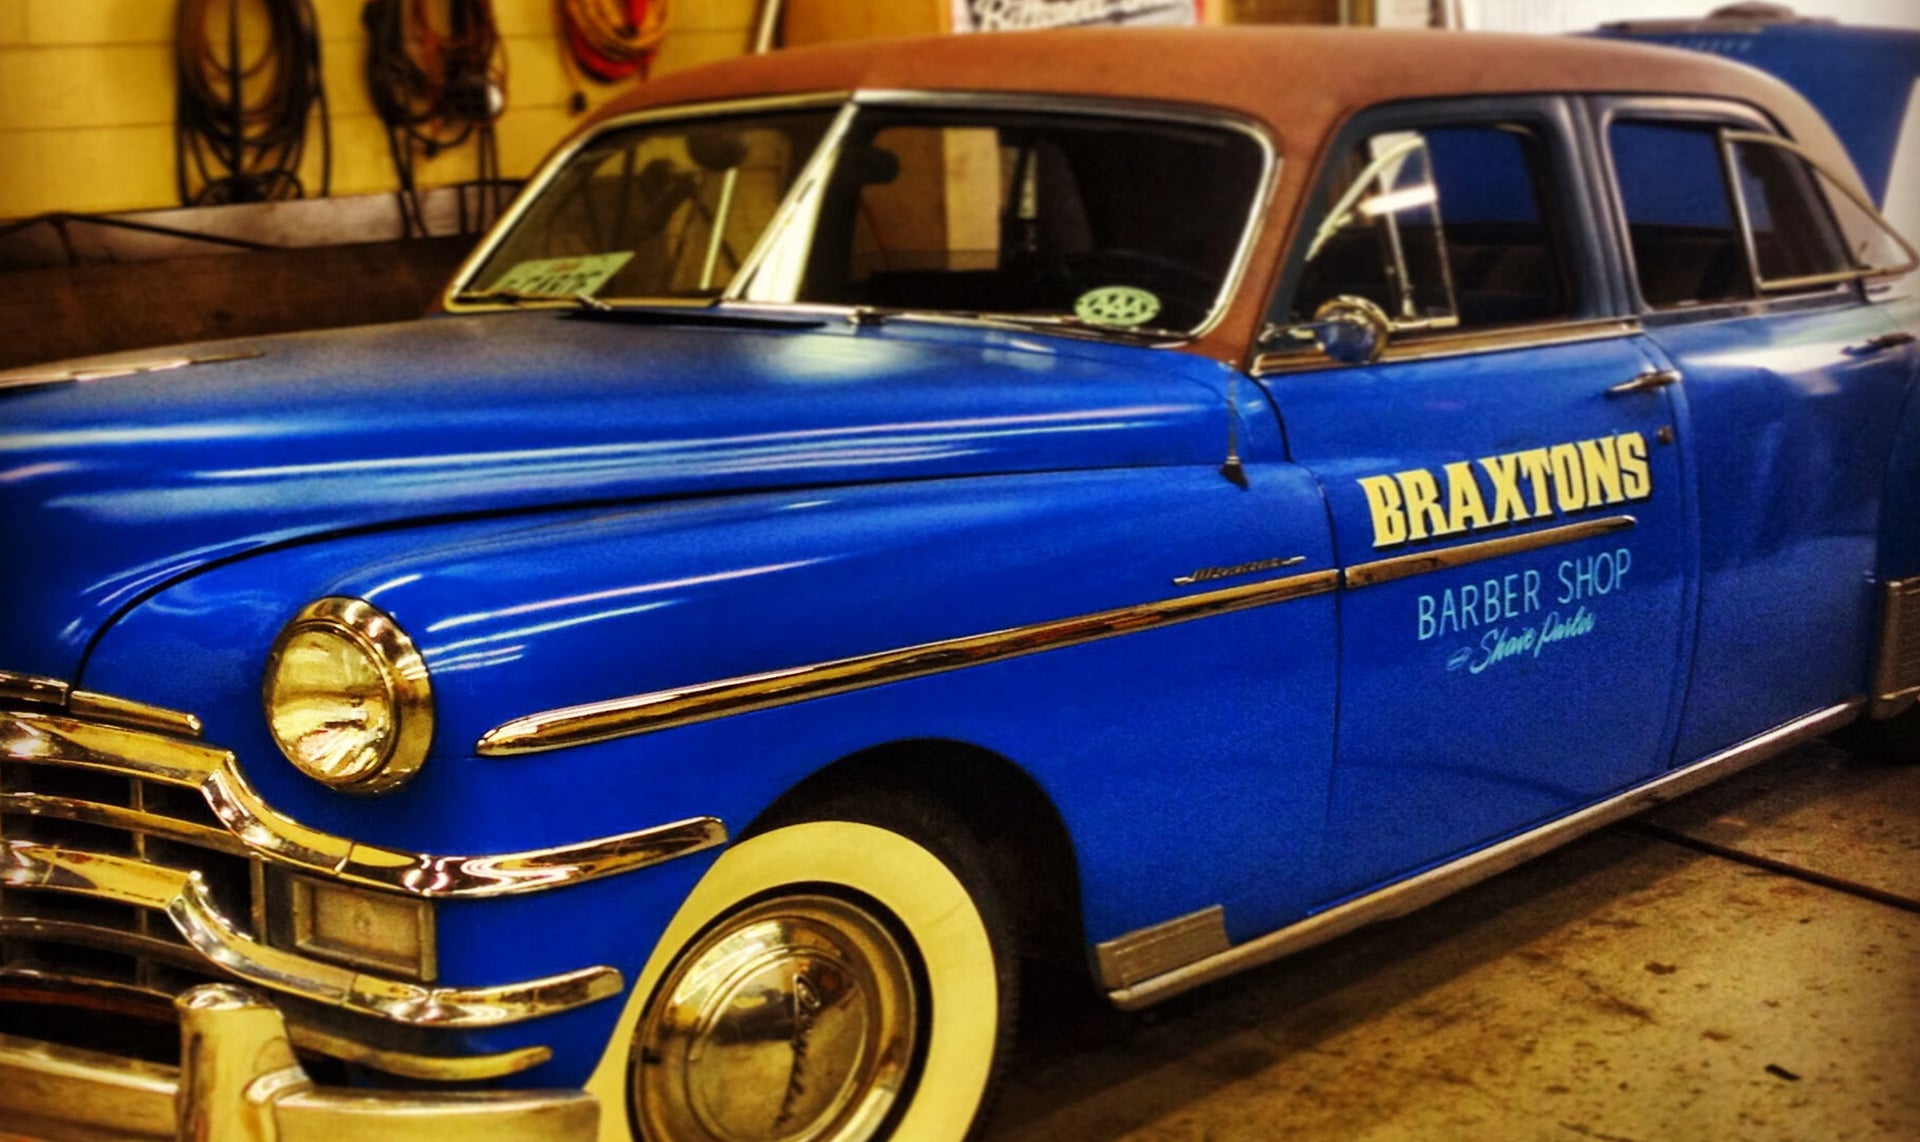 Braxton's barbershop classic car